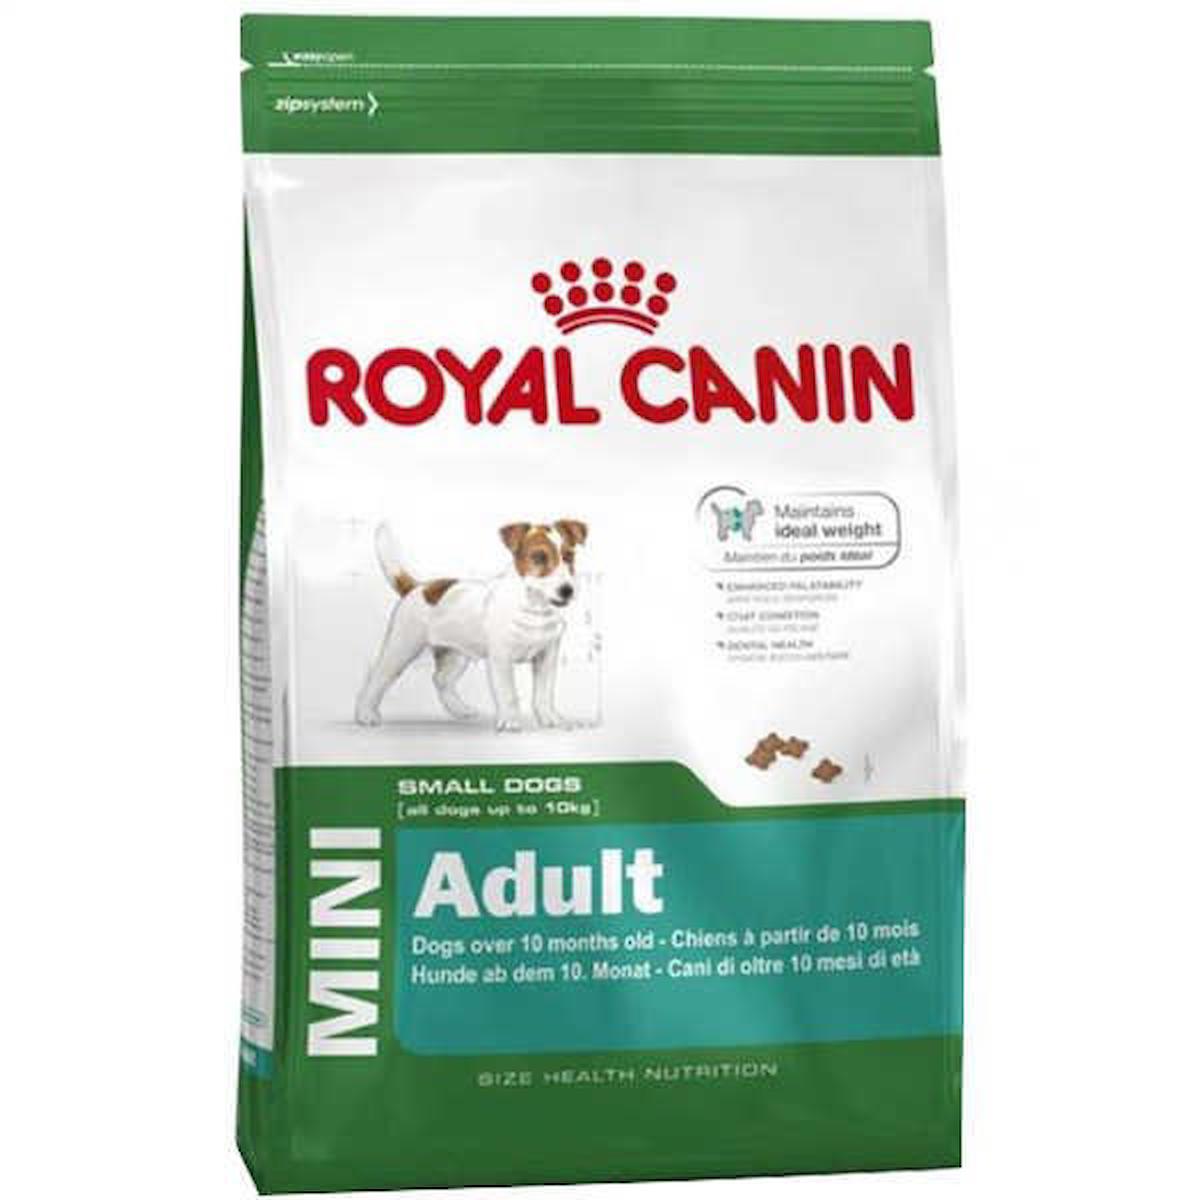 Royal Canin Size Health Nutrition Küçük Irk Yetişkin Kuru Köpek Maması 2 kg